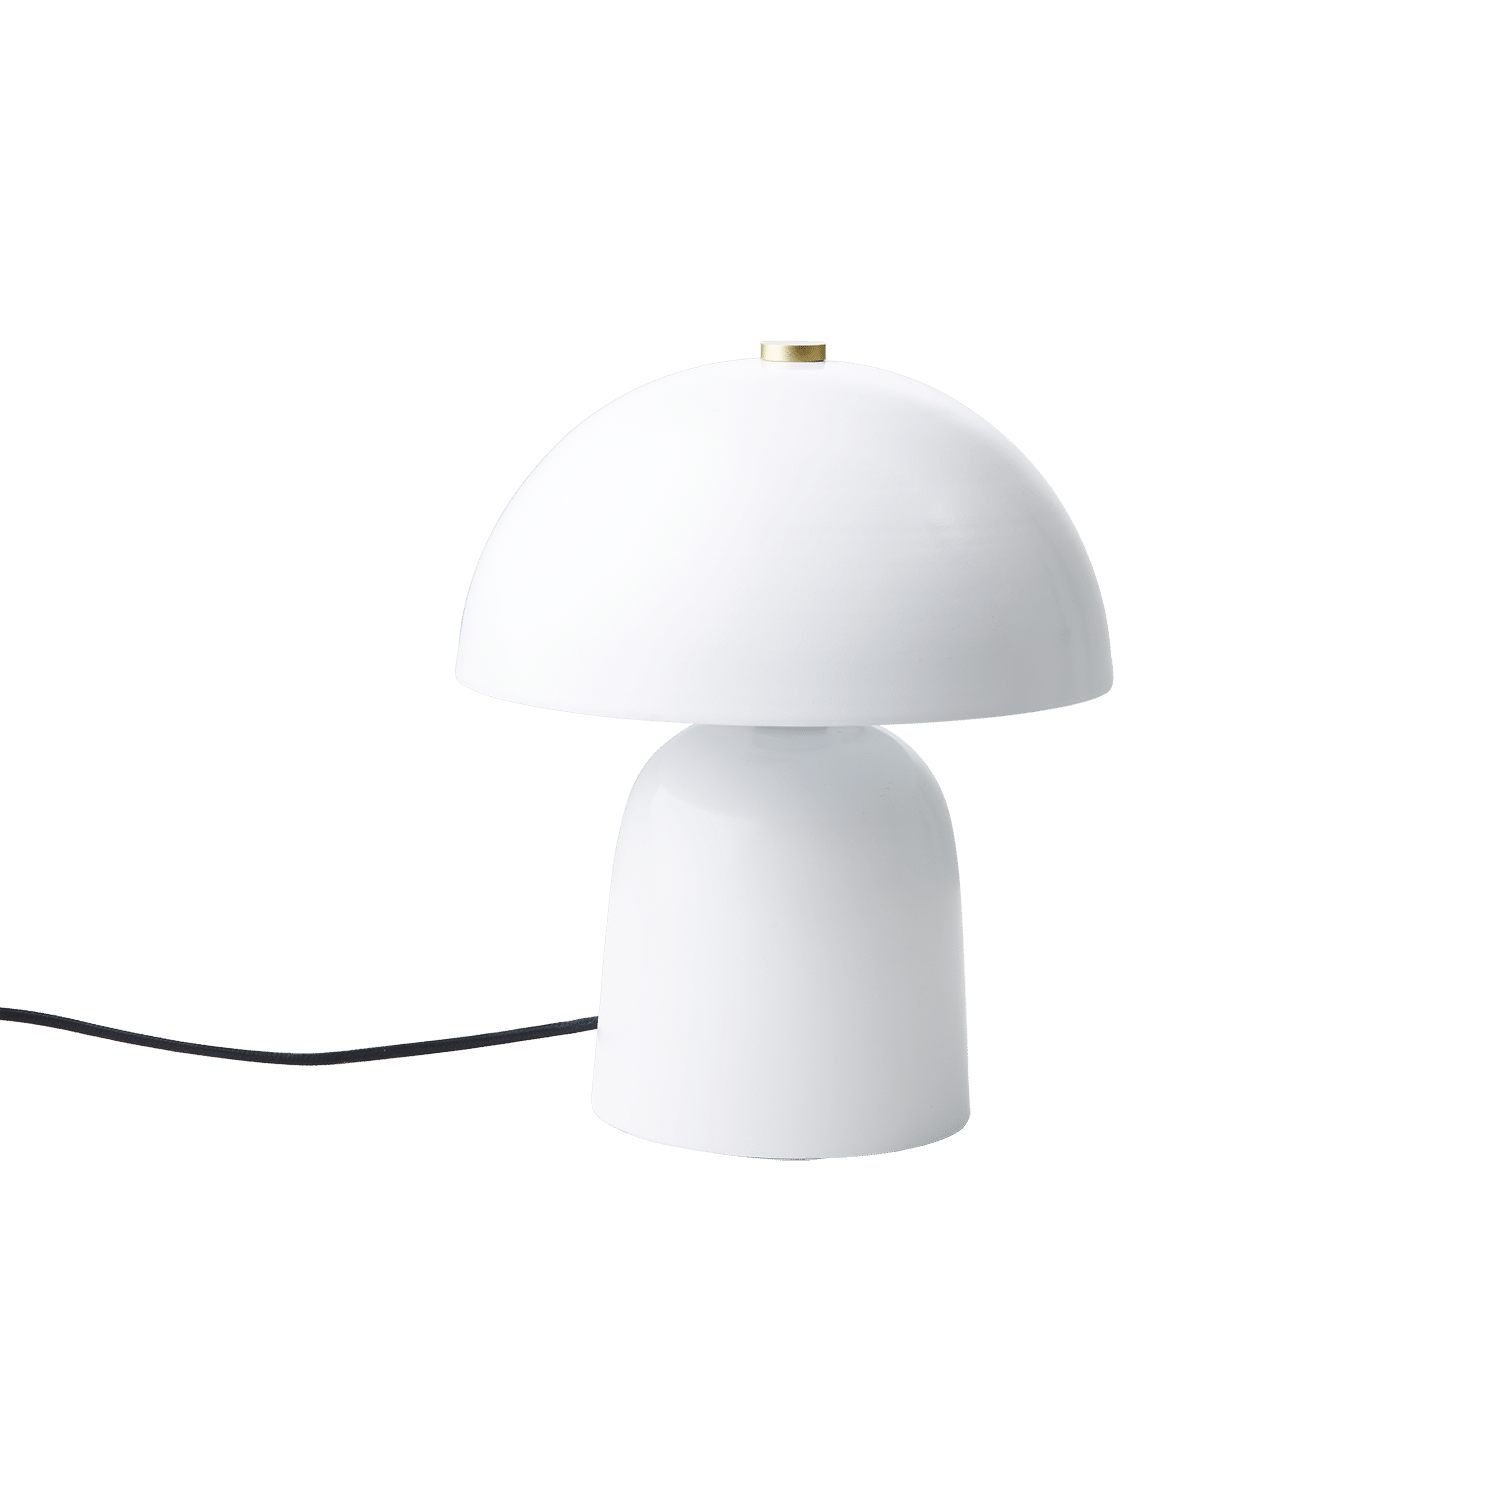 Omslagsbild för “Bordslampa Fungi vit liten”